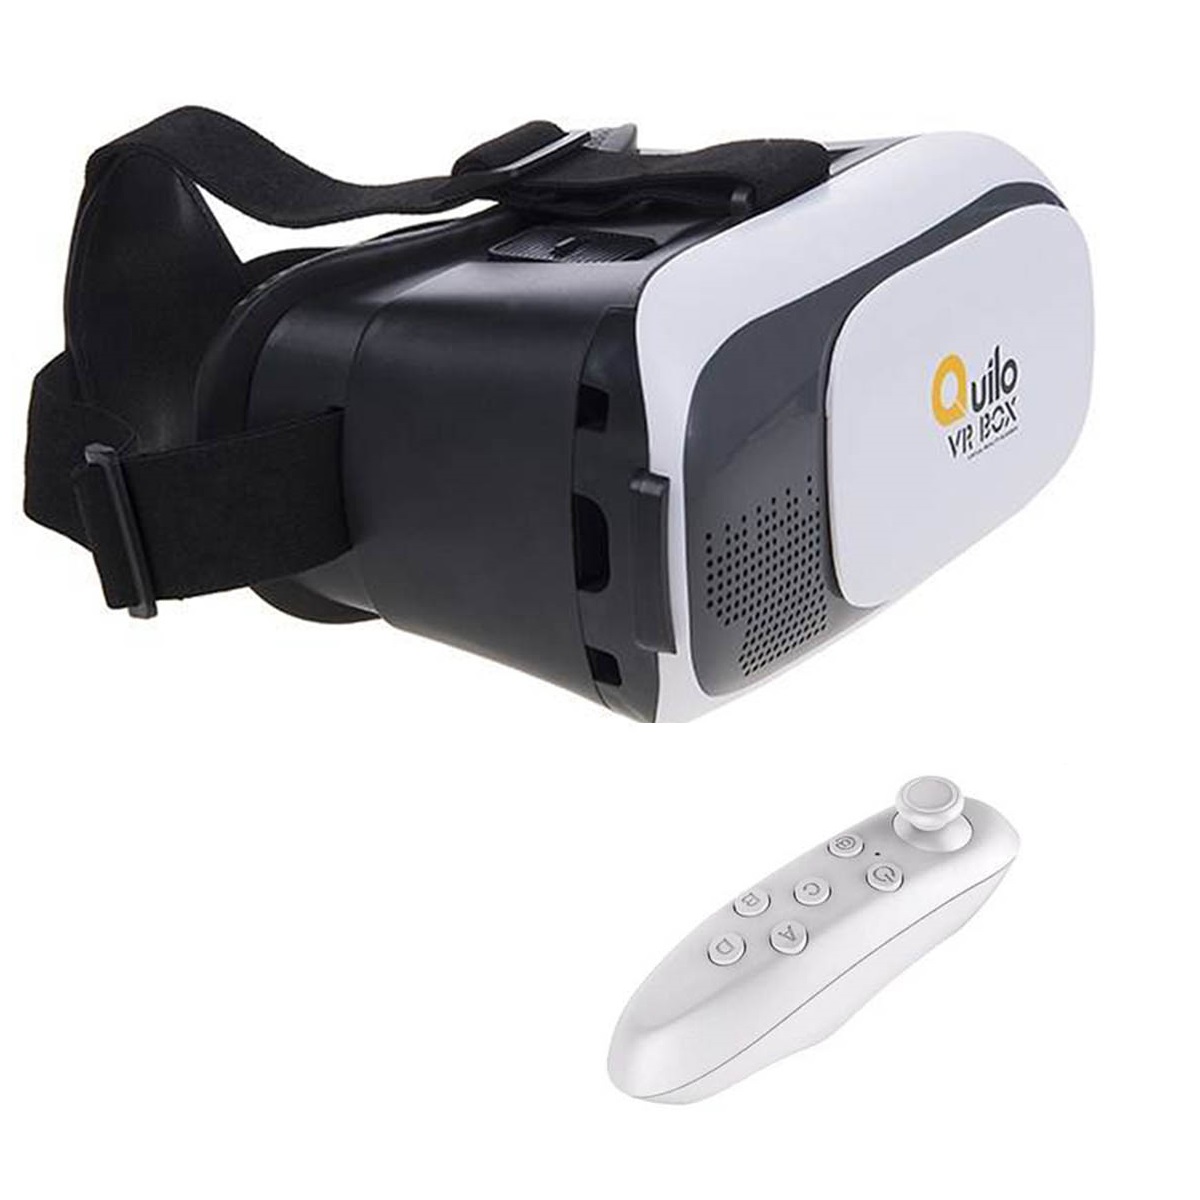 هدست واقعیت مجازی مدل VR Box-1 به همراه ریموت کنترل                     غیر اصل